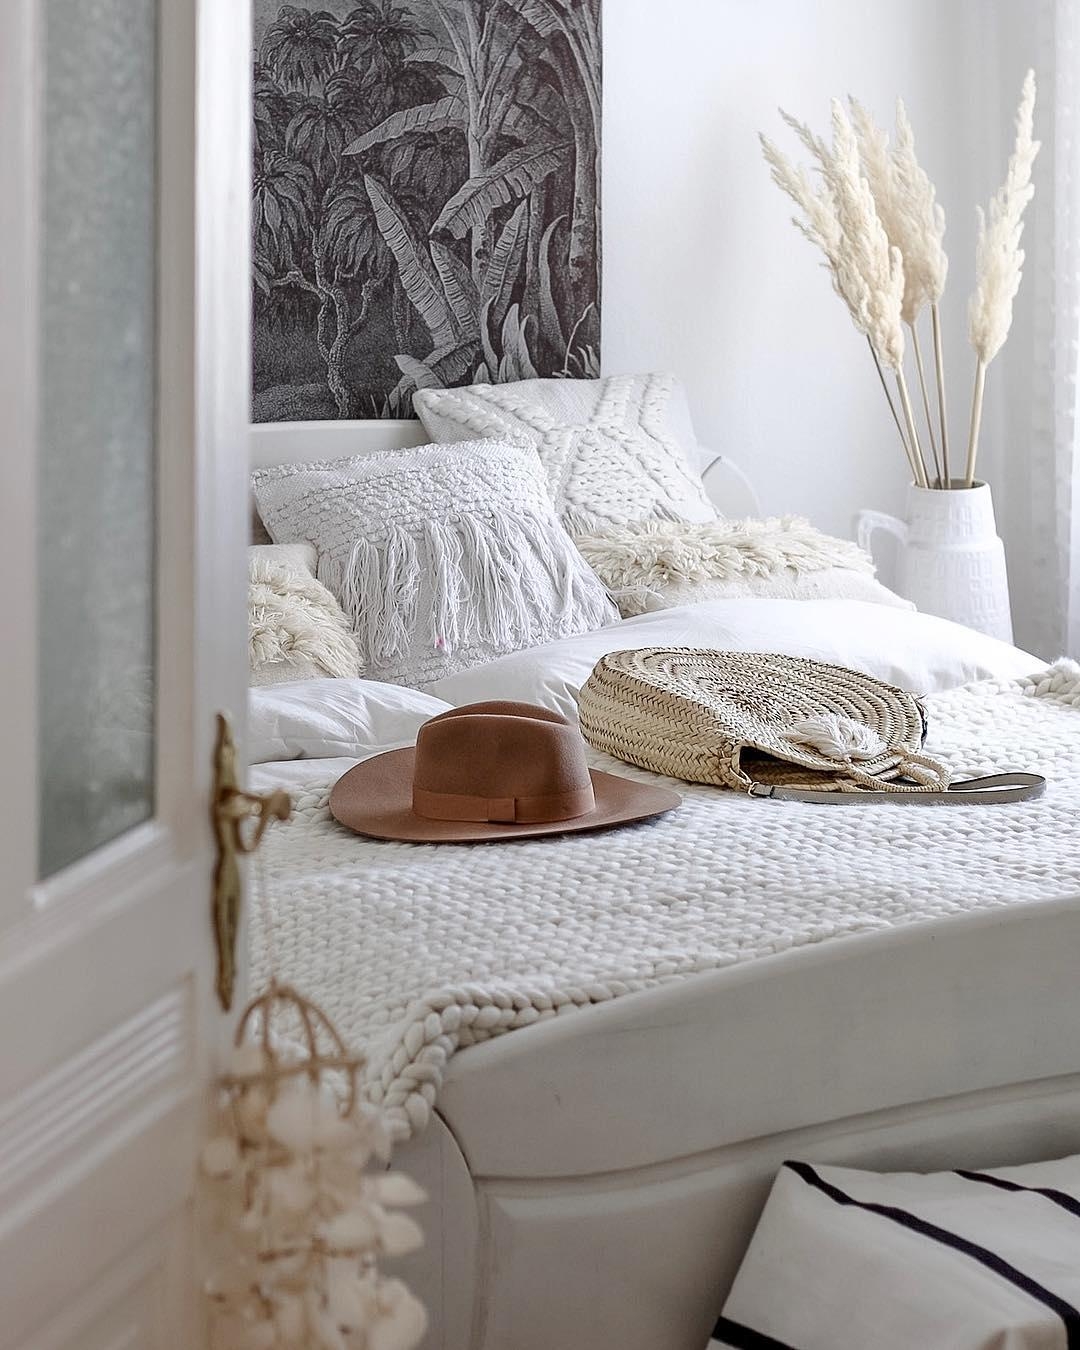 #Bedroom goals!

#schlafzimmer #gemütlich #kissen #interior #altbau #altbauliebe #bett #bettwäsche #couchstyle #white